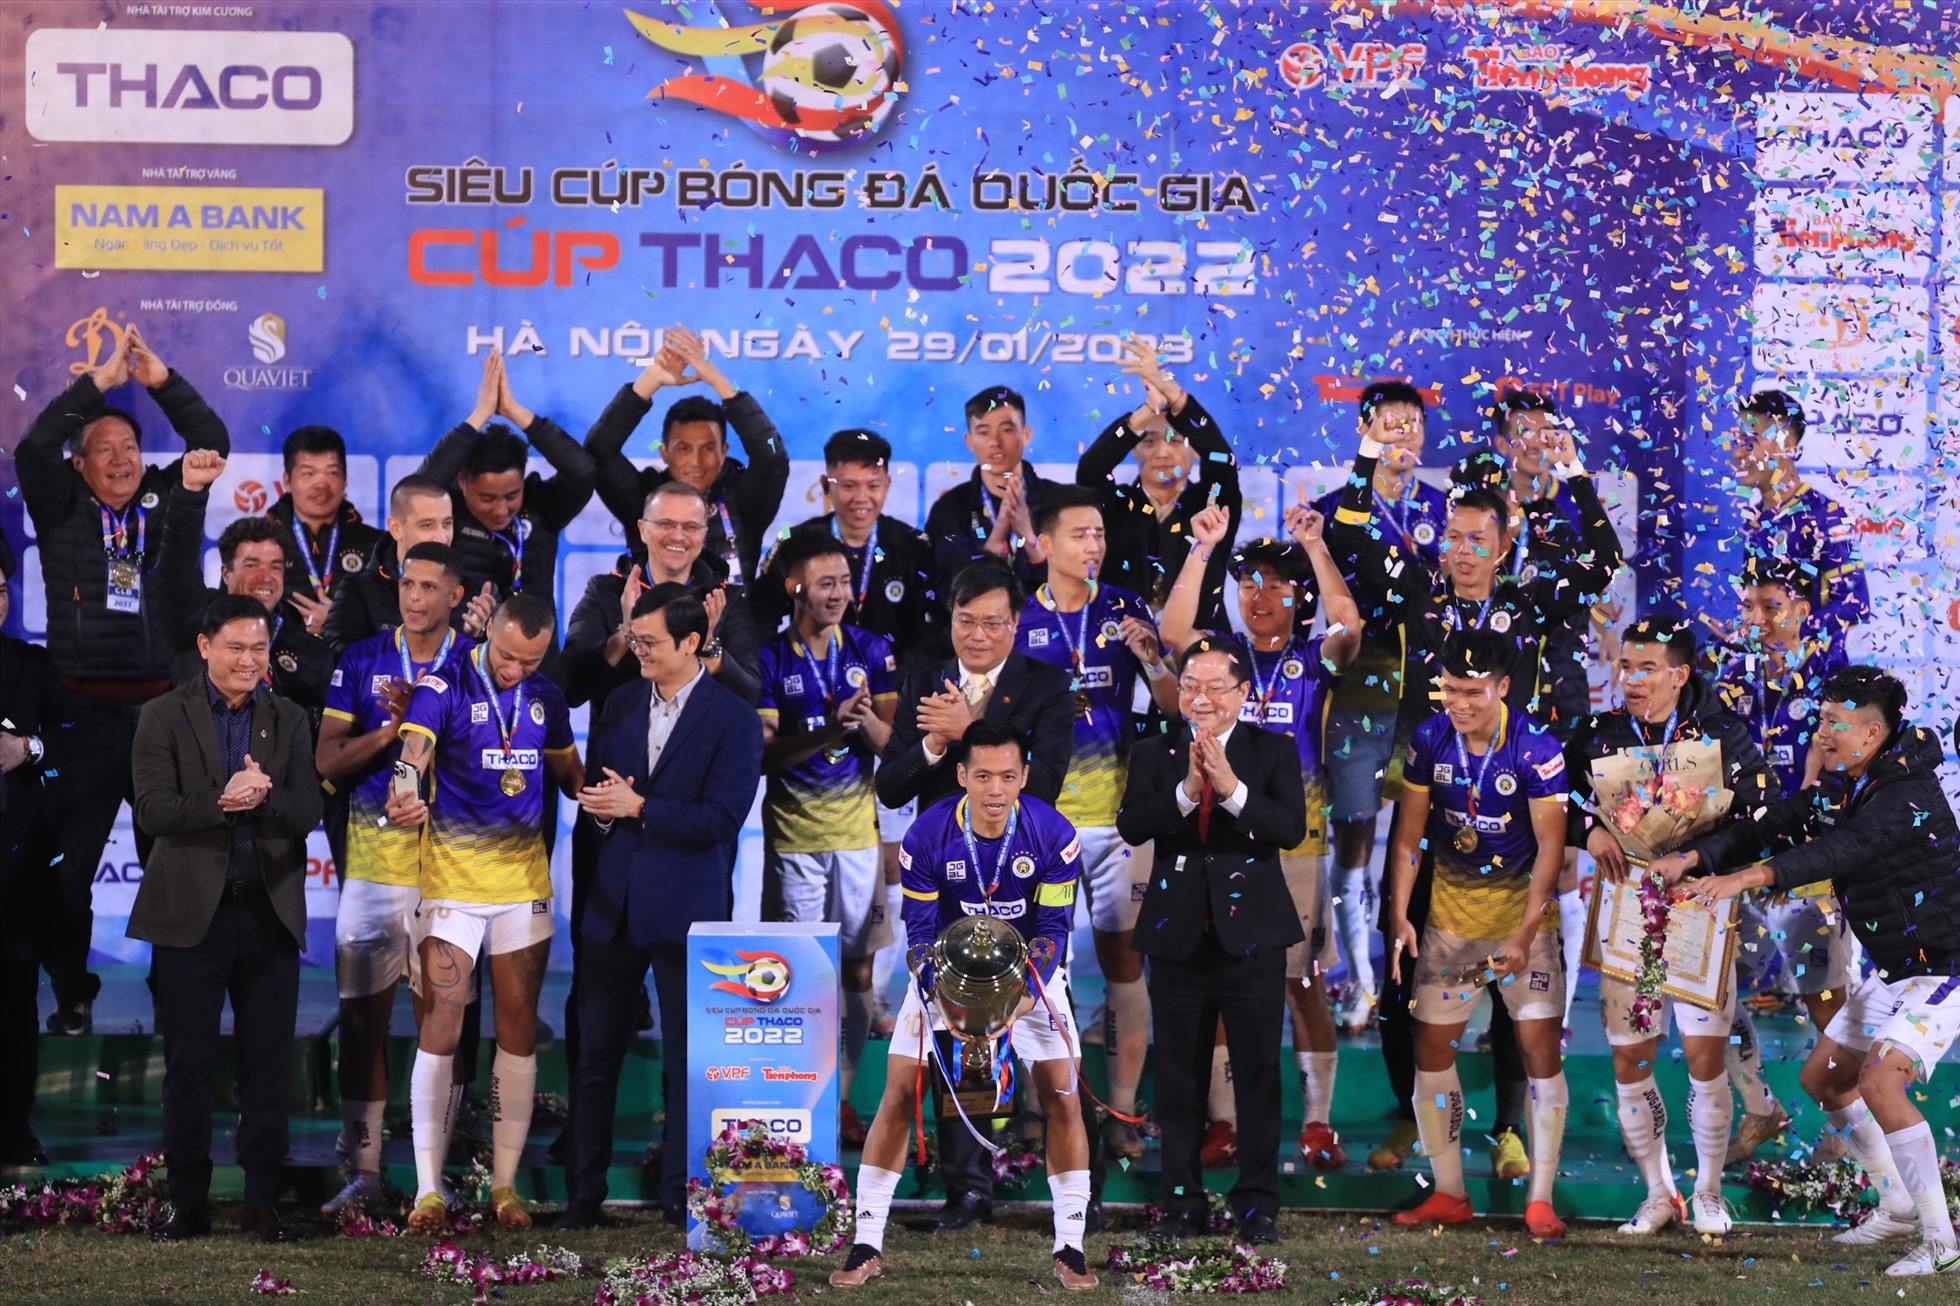 Các cầu thủ Hà Nội nhận cúp từ phía ban tổ chức.